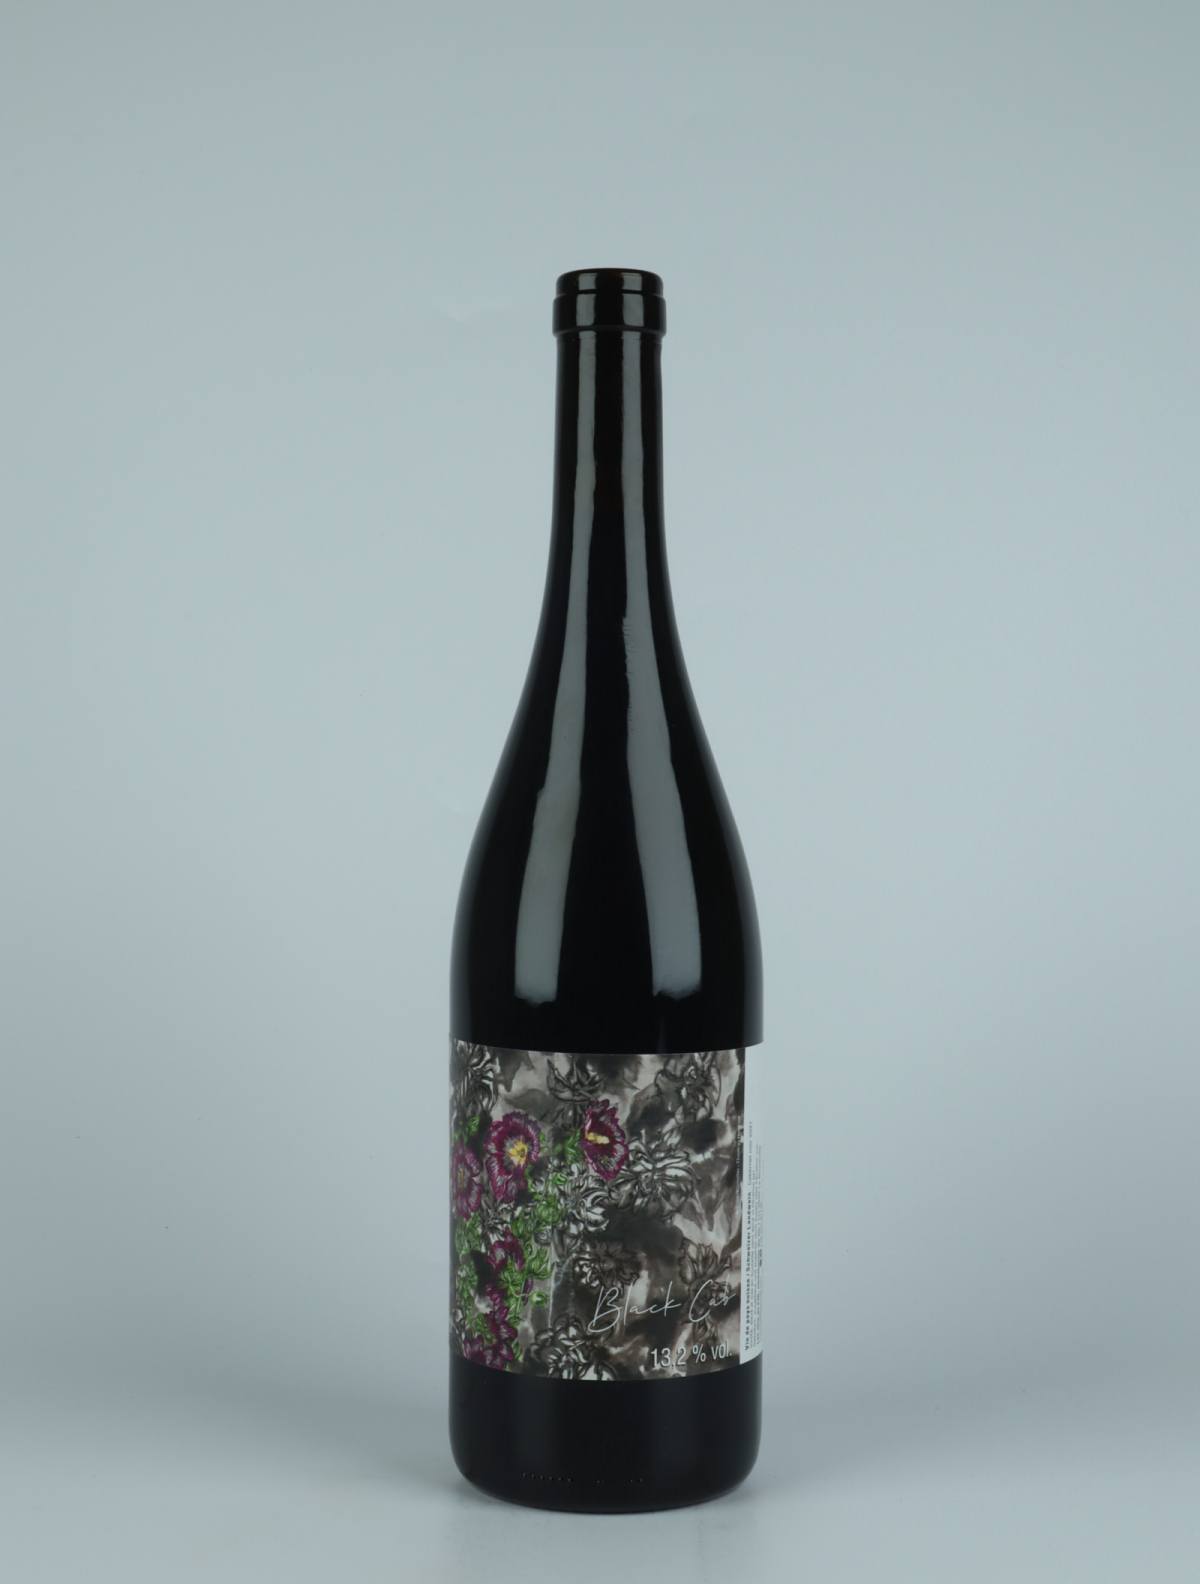 En flaske 2021 Cabernet Noir Rødvin fra Les Vins du Fab, Neuchâtel i Schweiz